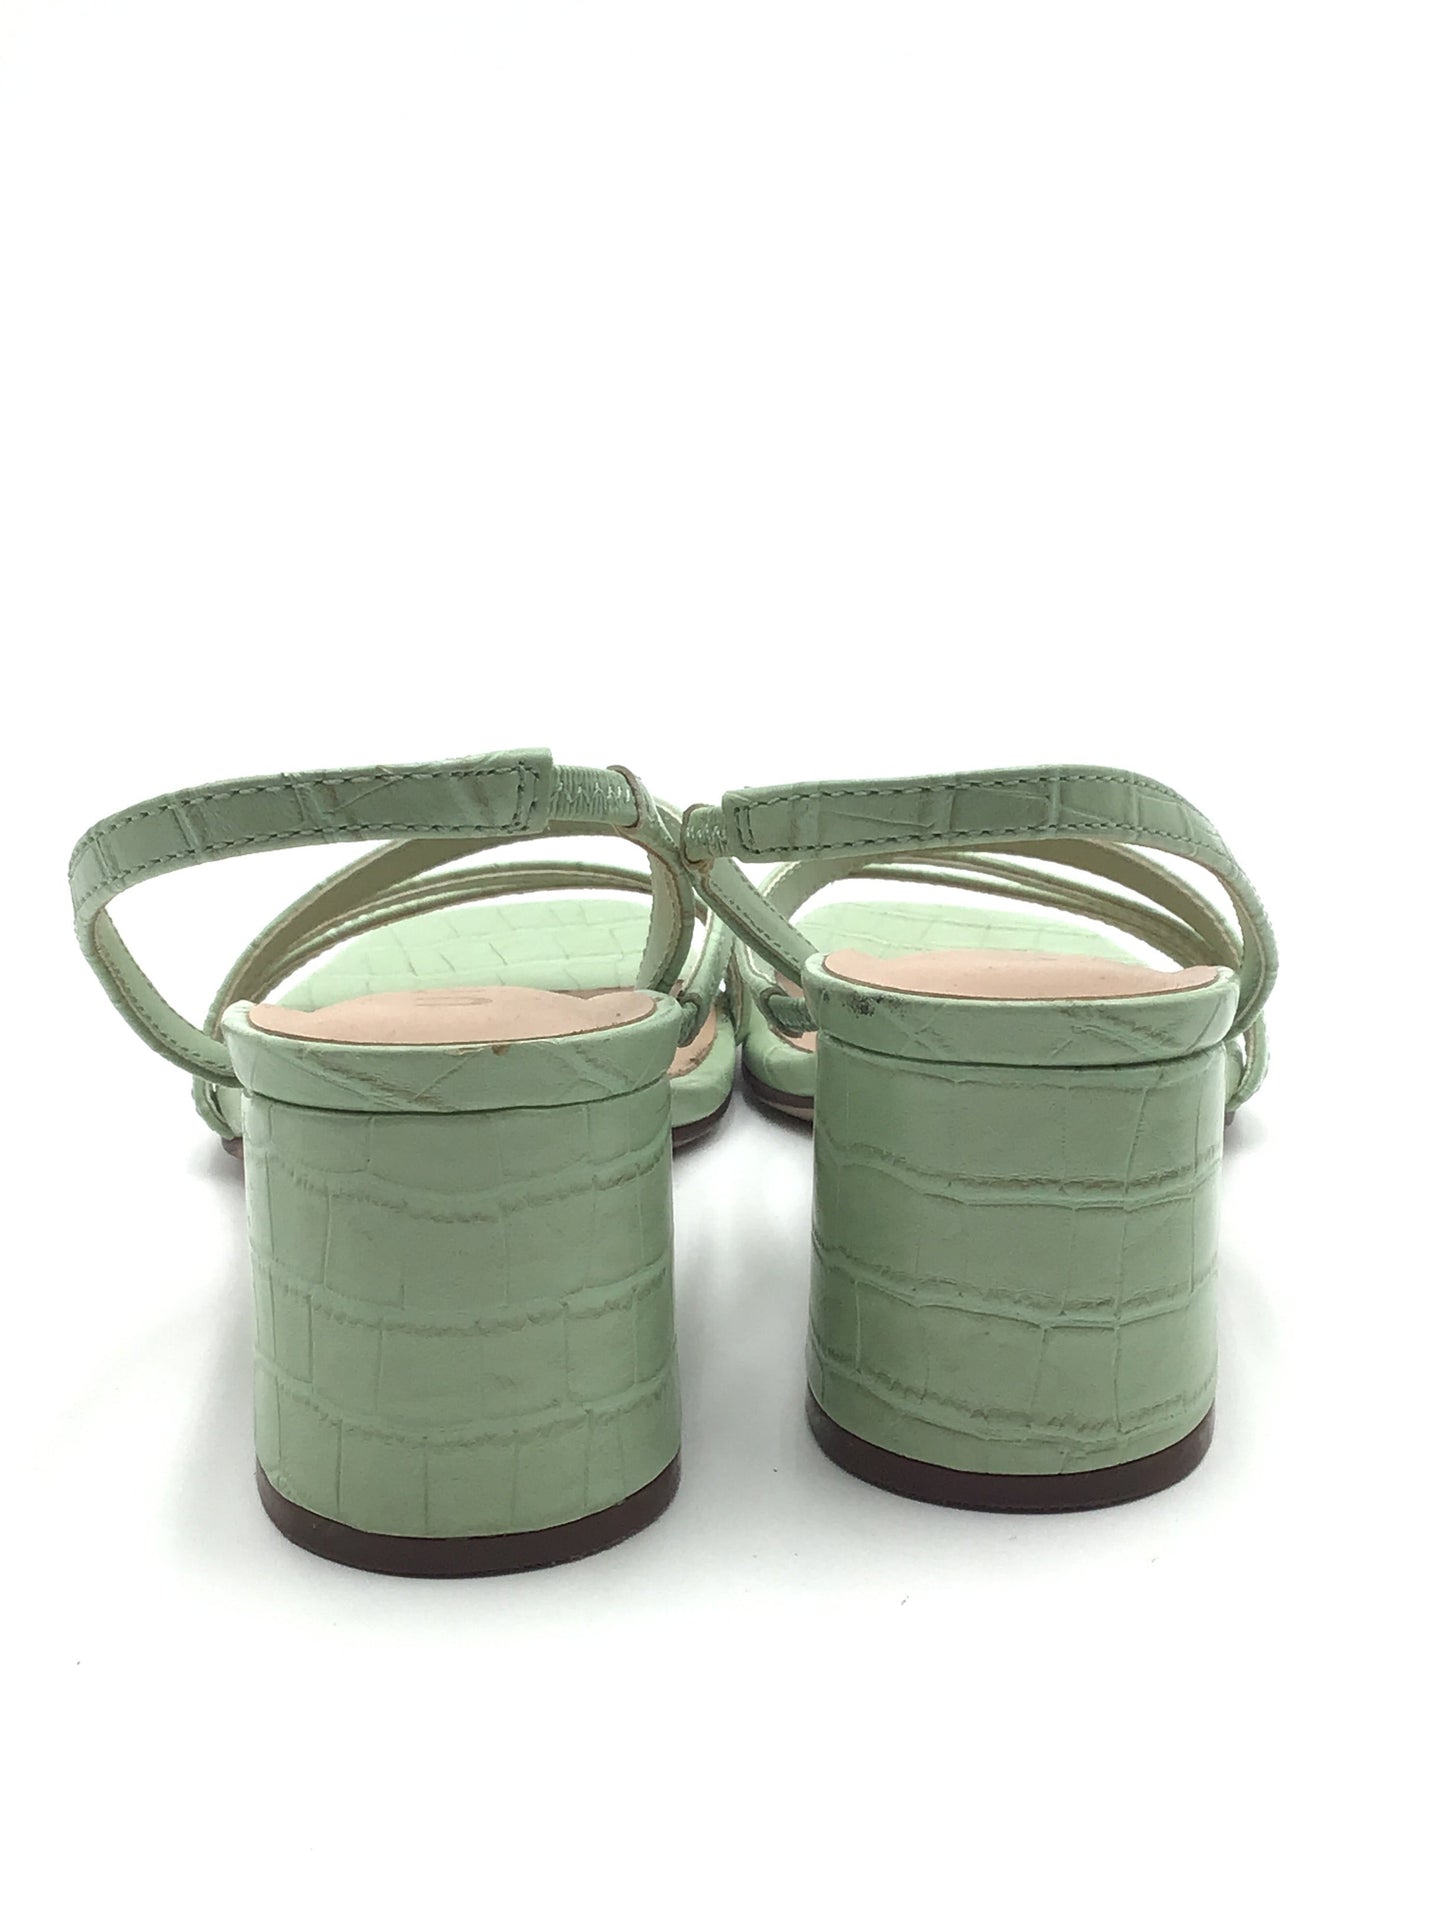 Green Shoes Heels Block Unisa, Size 6